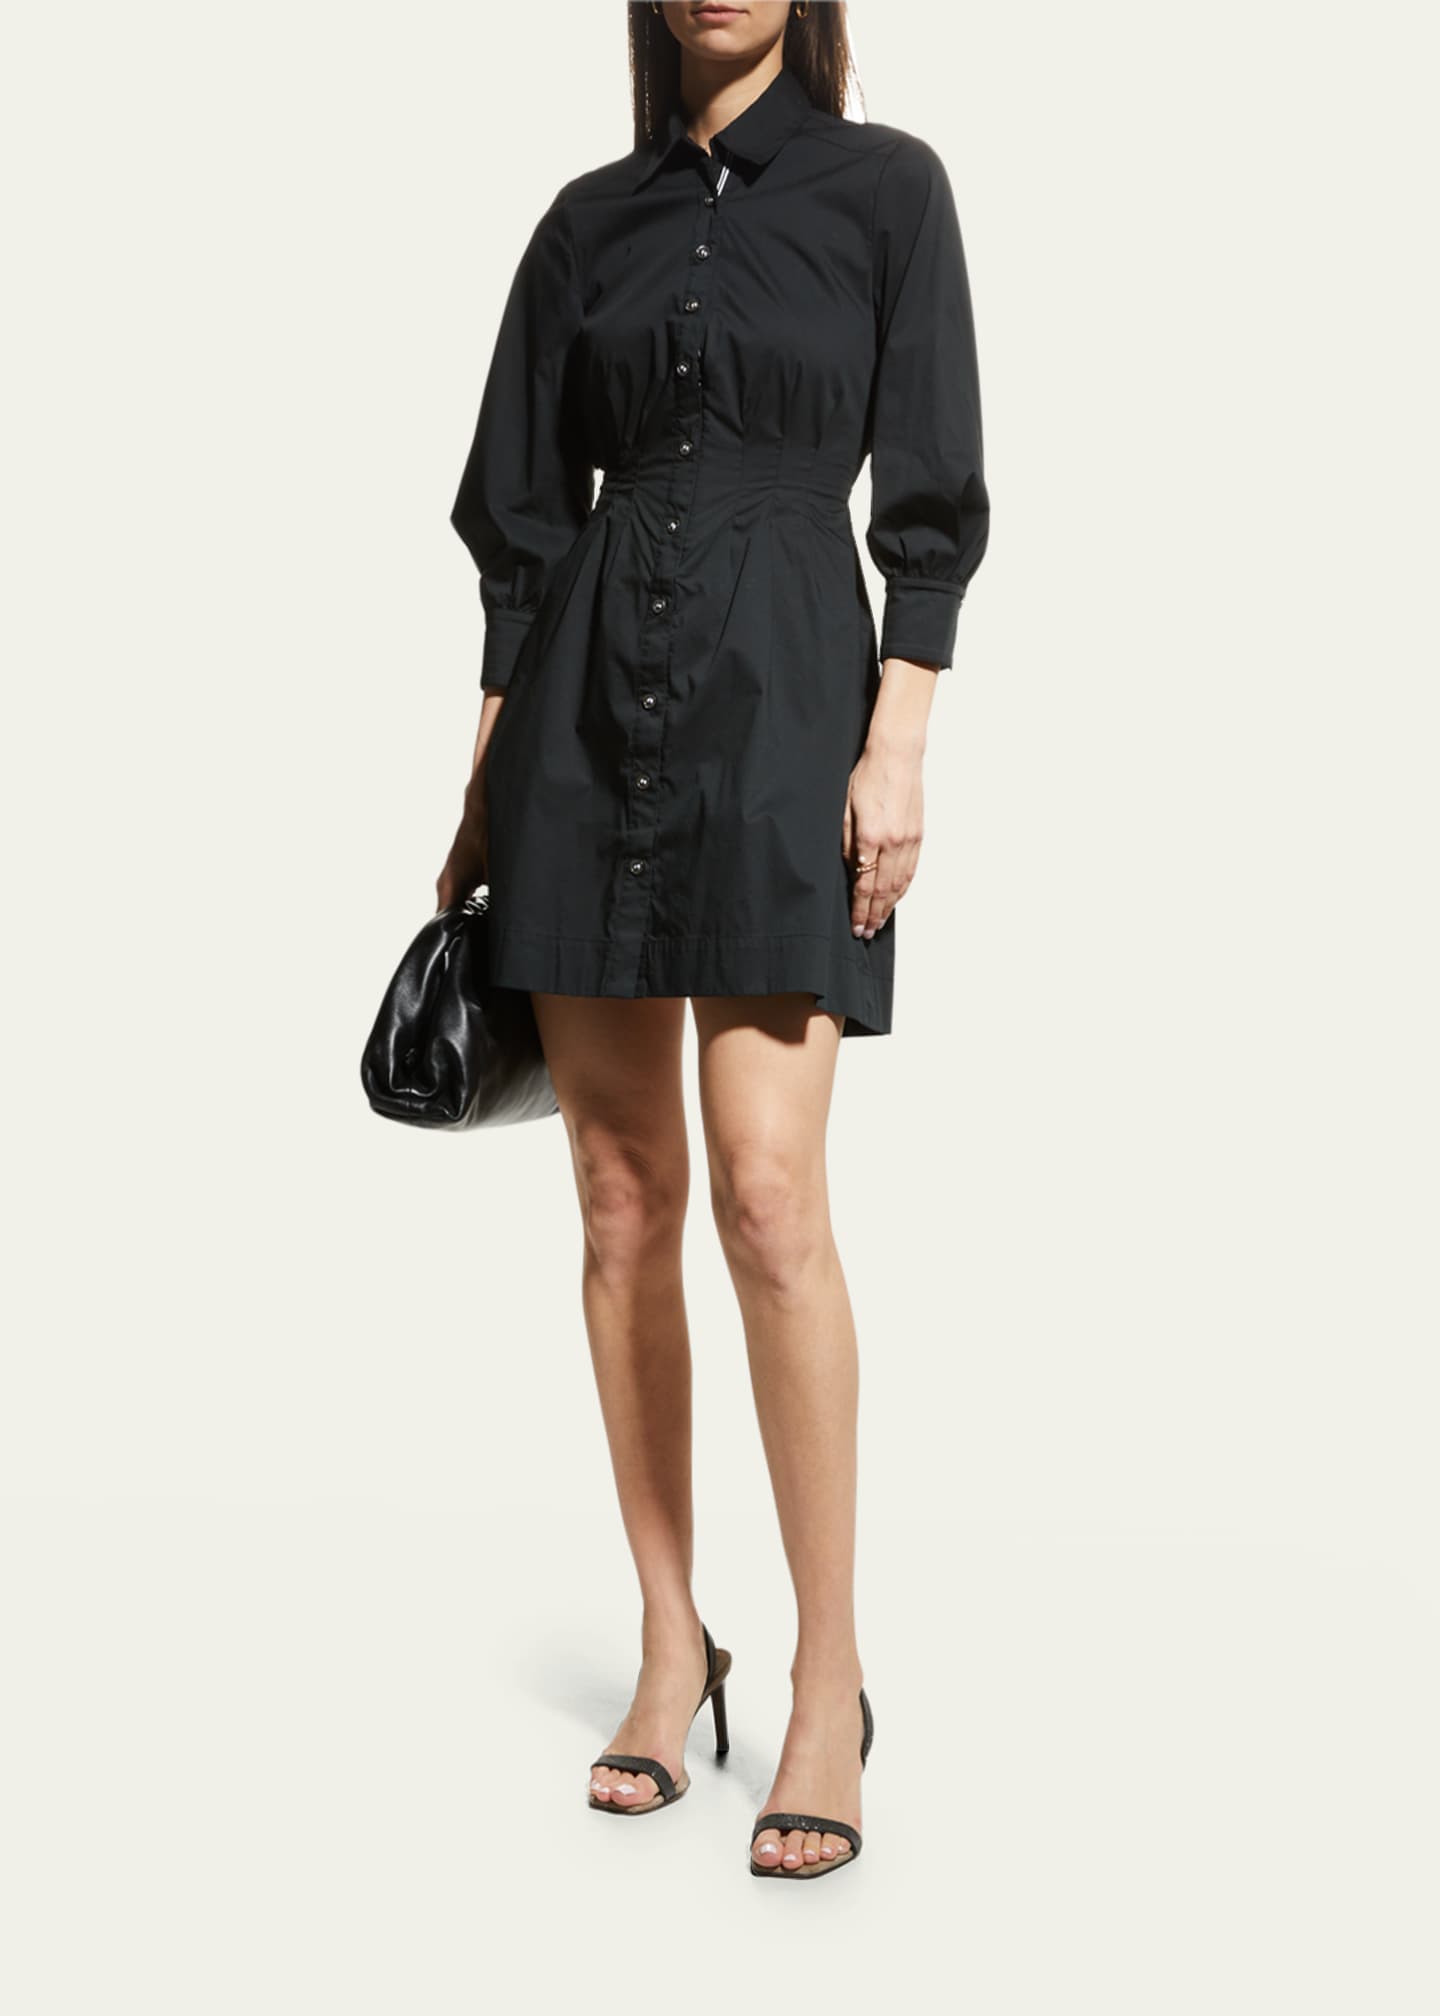 Veronica Beard Polina Button-Front Pleated Shirt Dress - Bergdorf Goodman